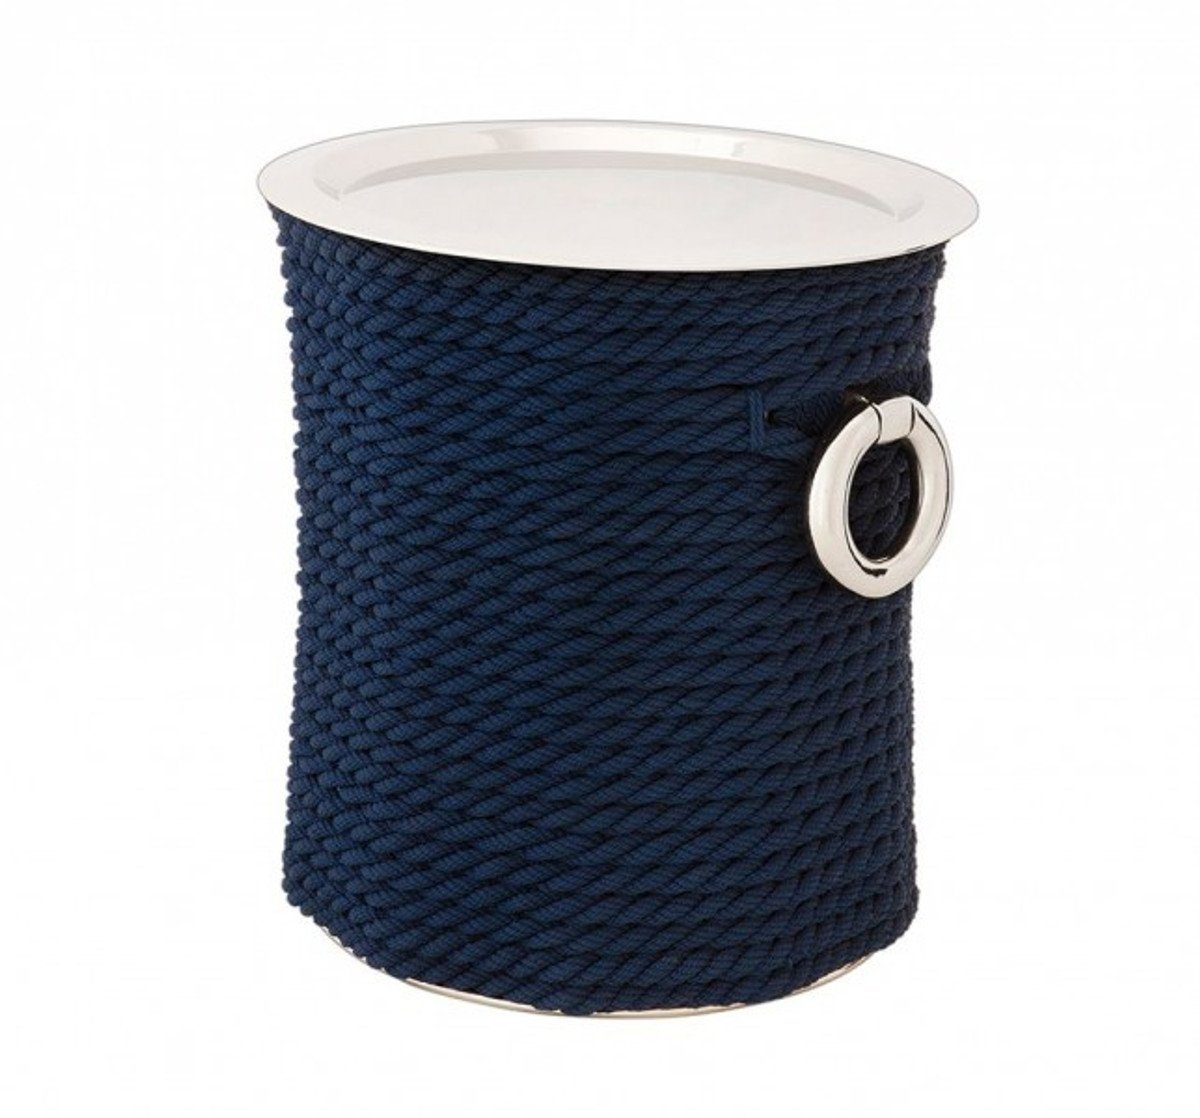 Beistelltisch Beistelltisch Nickel Designer - Casa blauem mit Padrino Luxus Seil Luxus Beistelltisch Deco Art